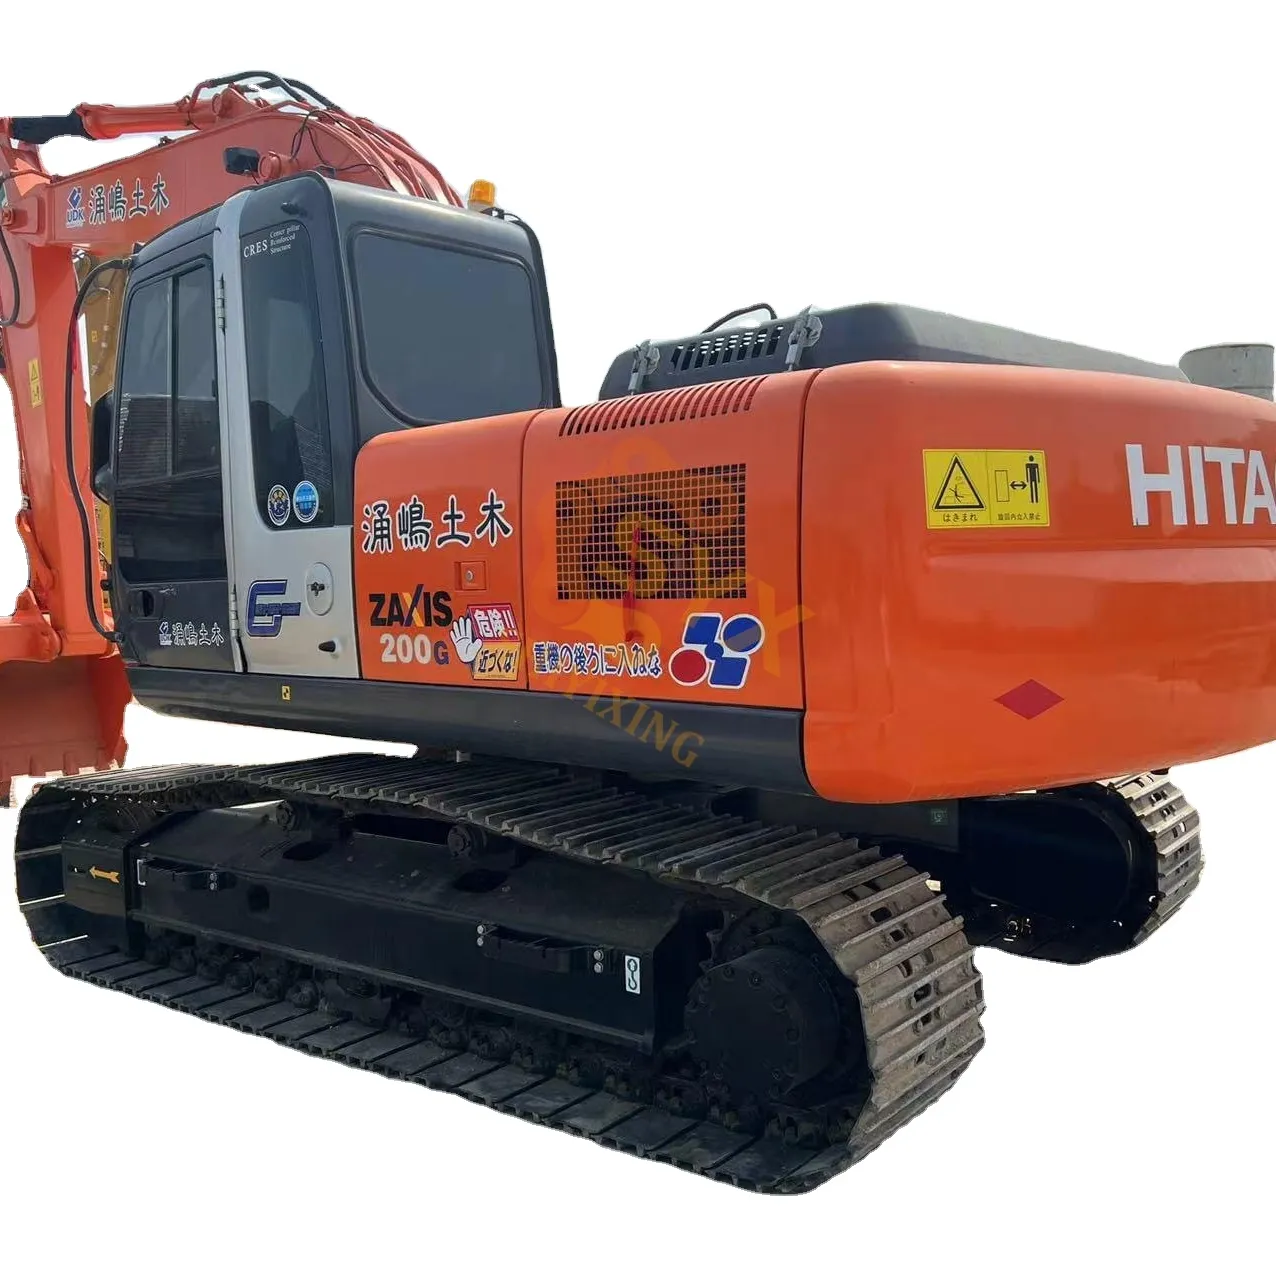 Hitachi zaxis 200 escavadeira 20 ton máquinas florestais usadas hitachi zx200-3G escavadeira para venda